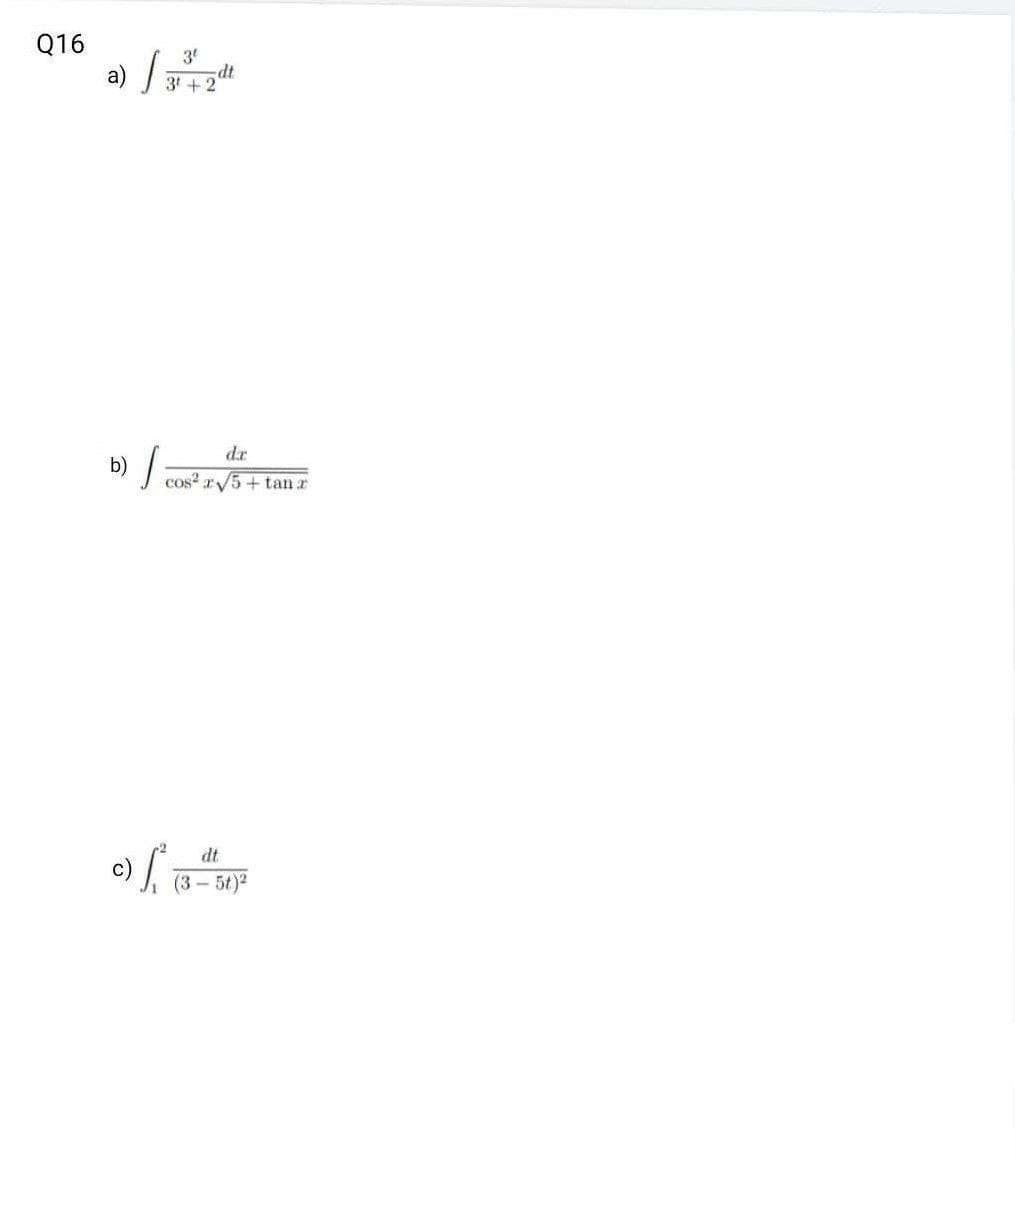 016
a) |
b) |
c)
3º
ਹੈ
3+2
cos² √5 + tan z
dt
(3-5t)²